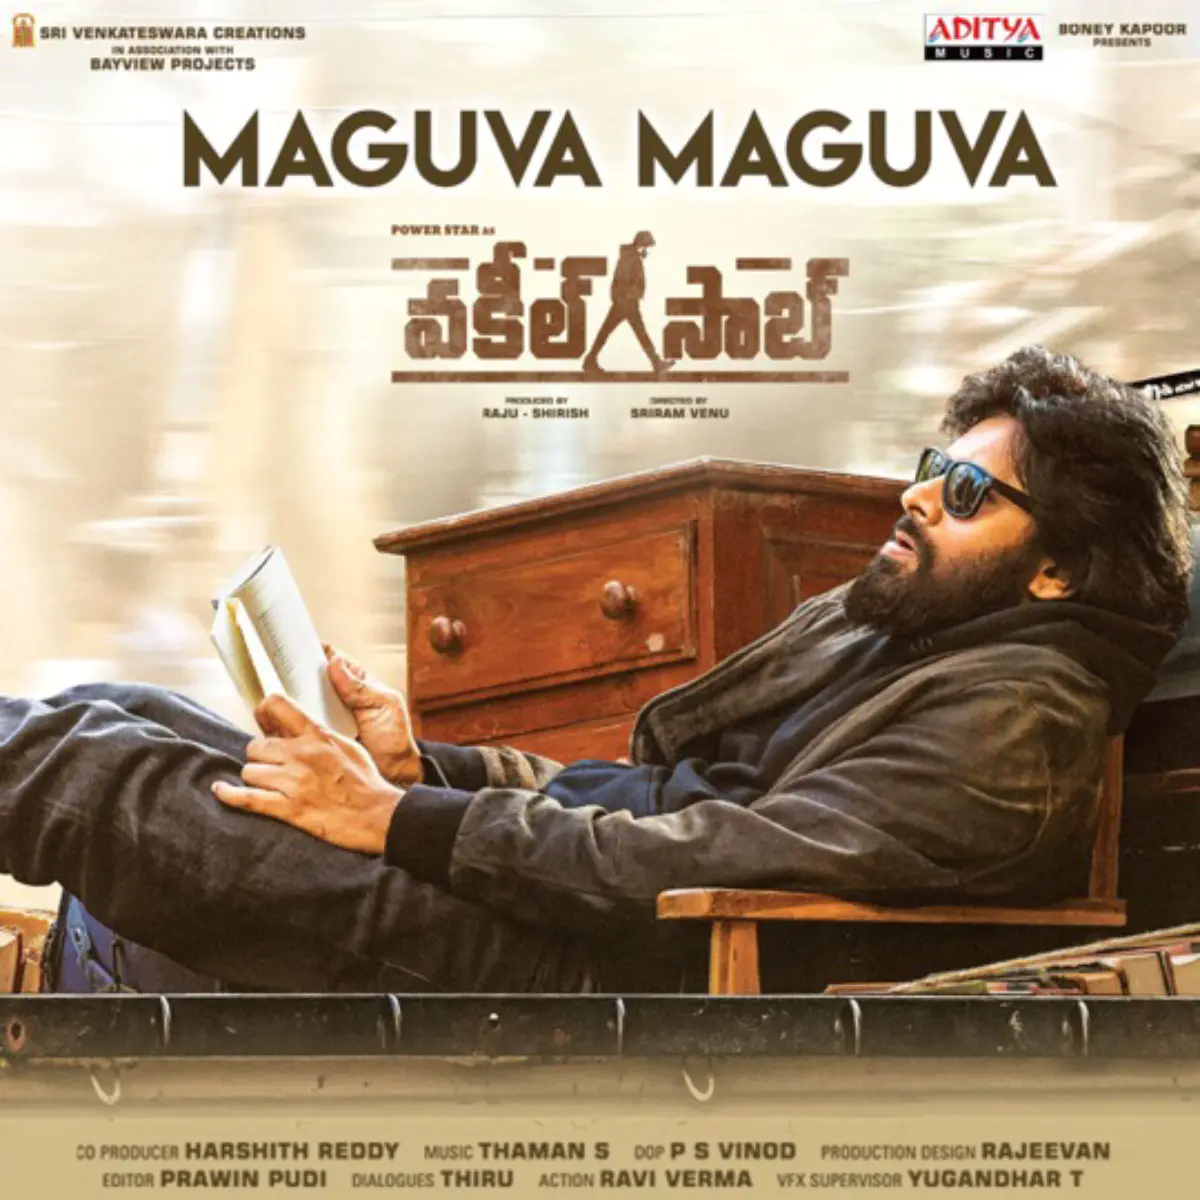 Maguva Maguva Lyrics in Telugu, Vakeel Saab Maguva Maguva Song Lyrics in English Free Online on Gaana.com